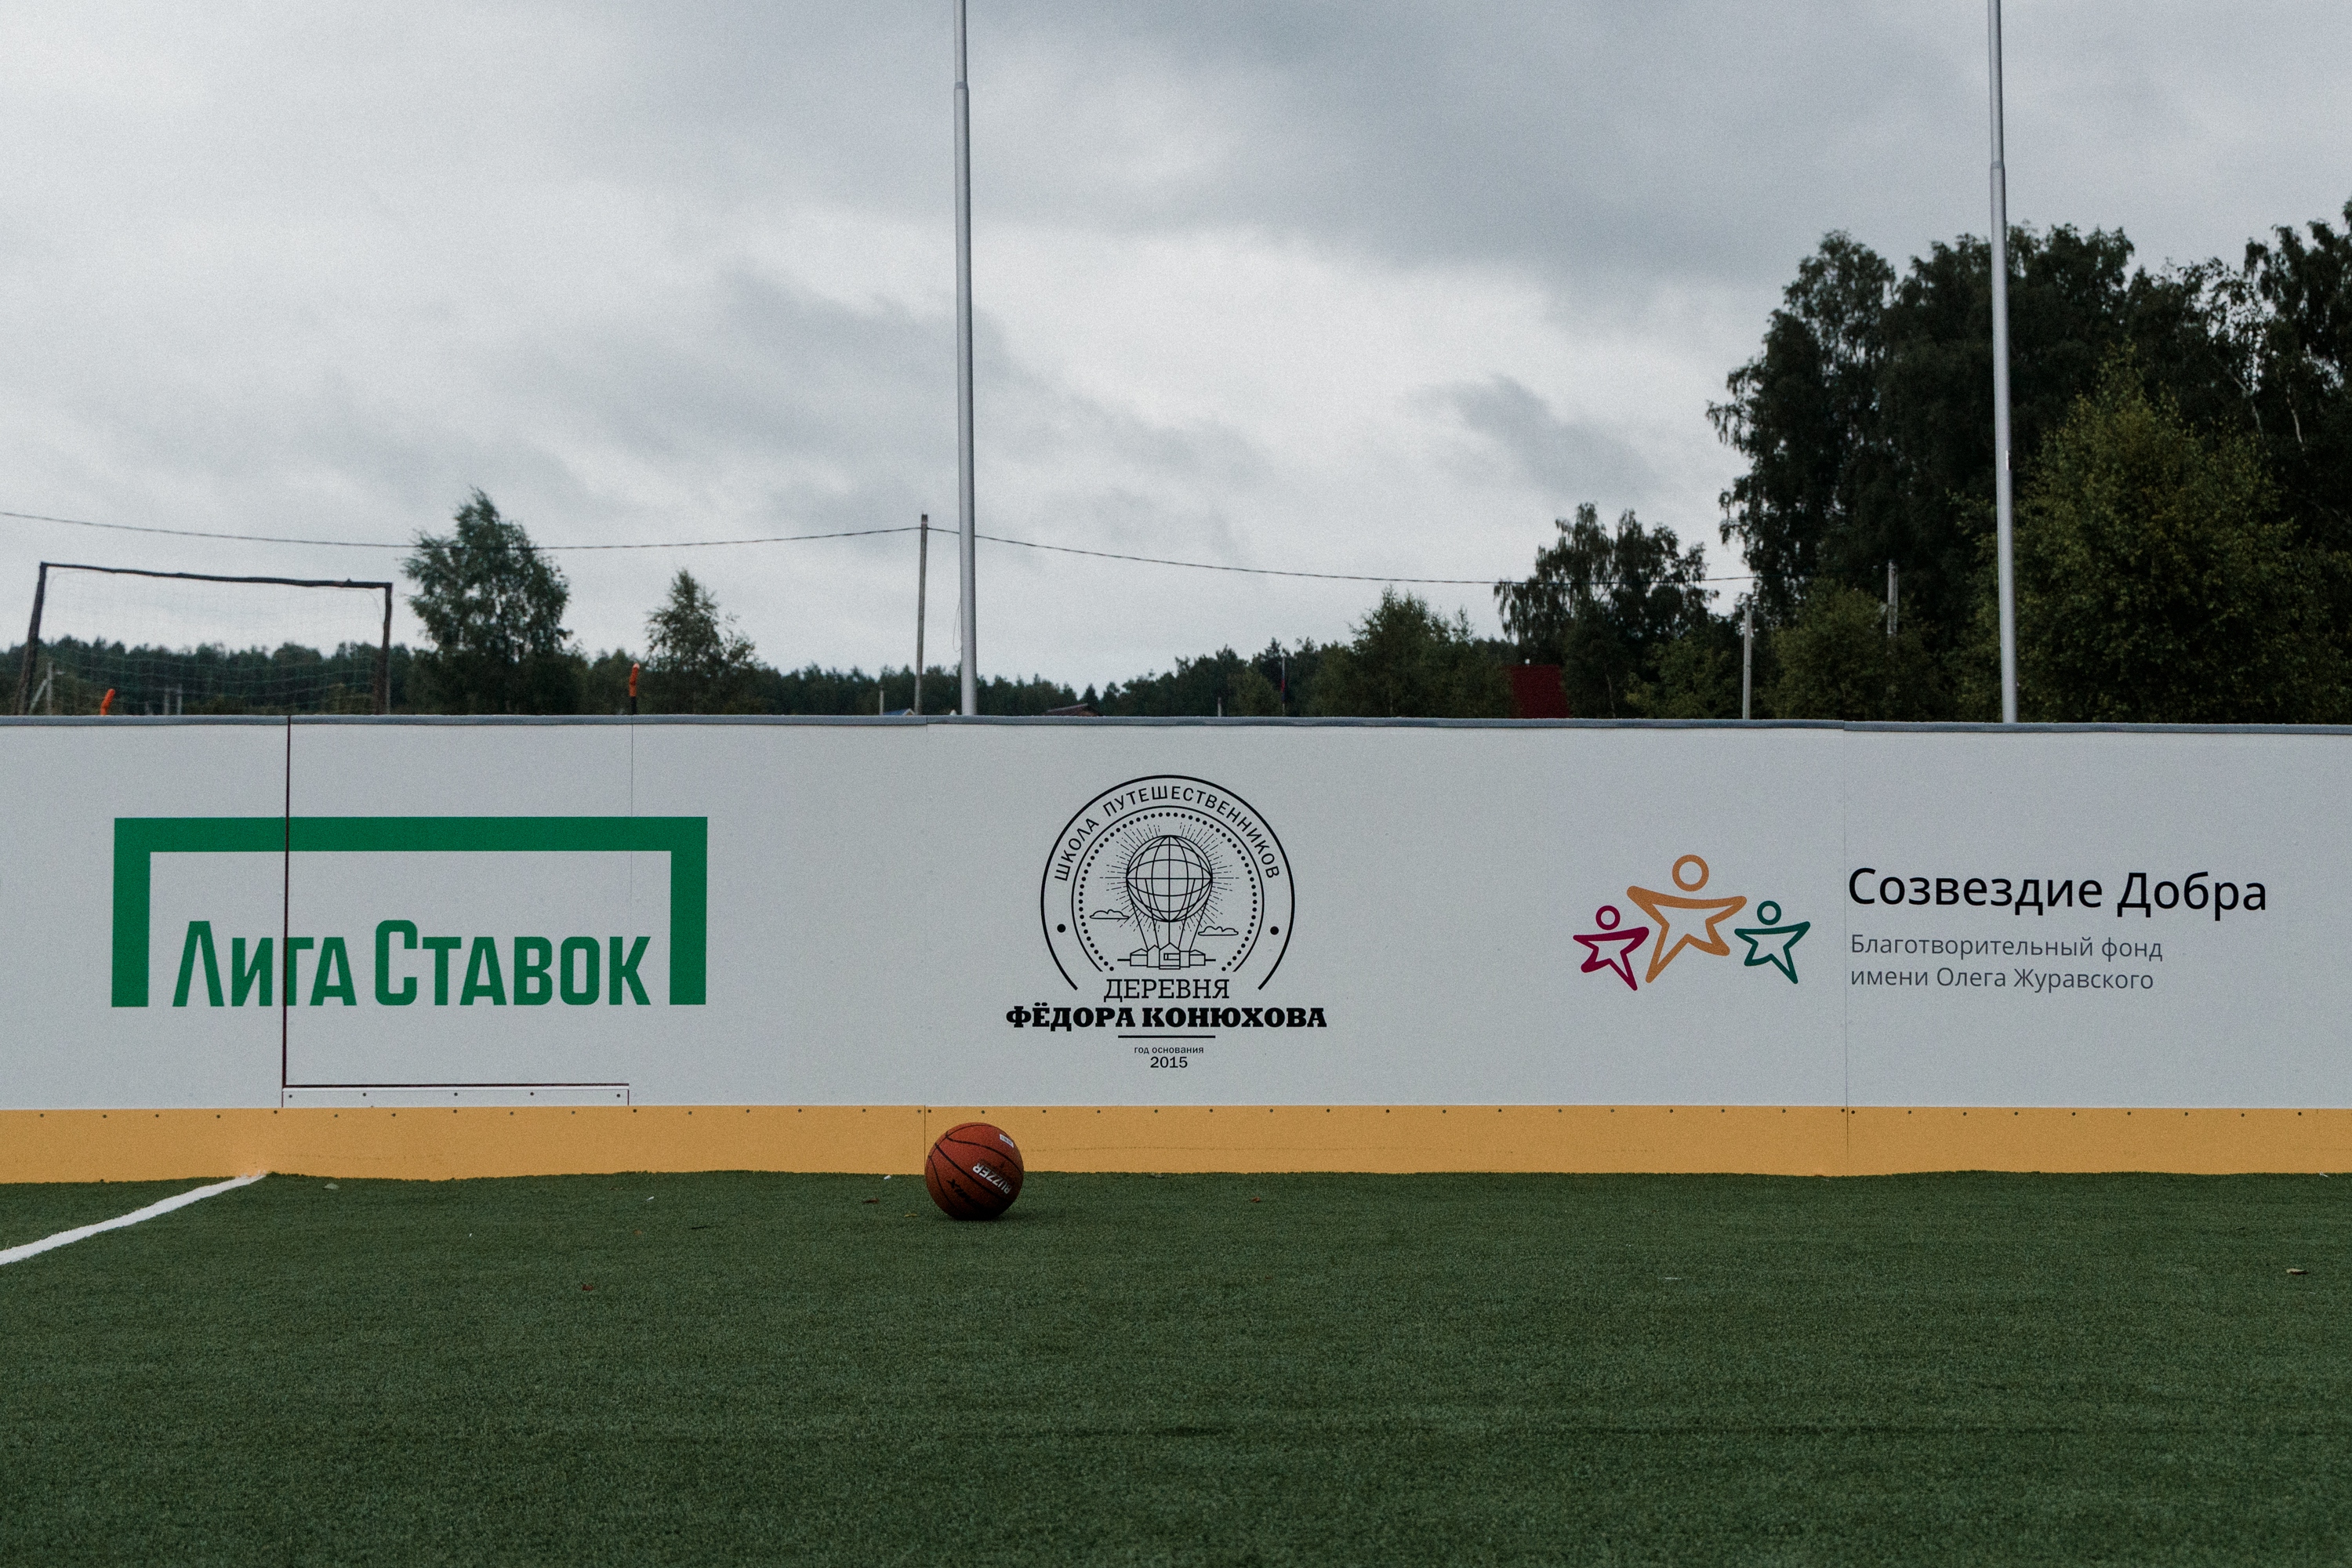 Спортивная площадка в Деревне Конюхова (2).jpg